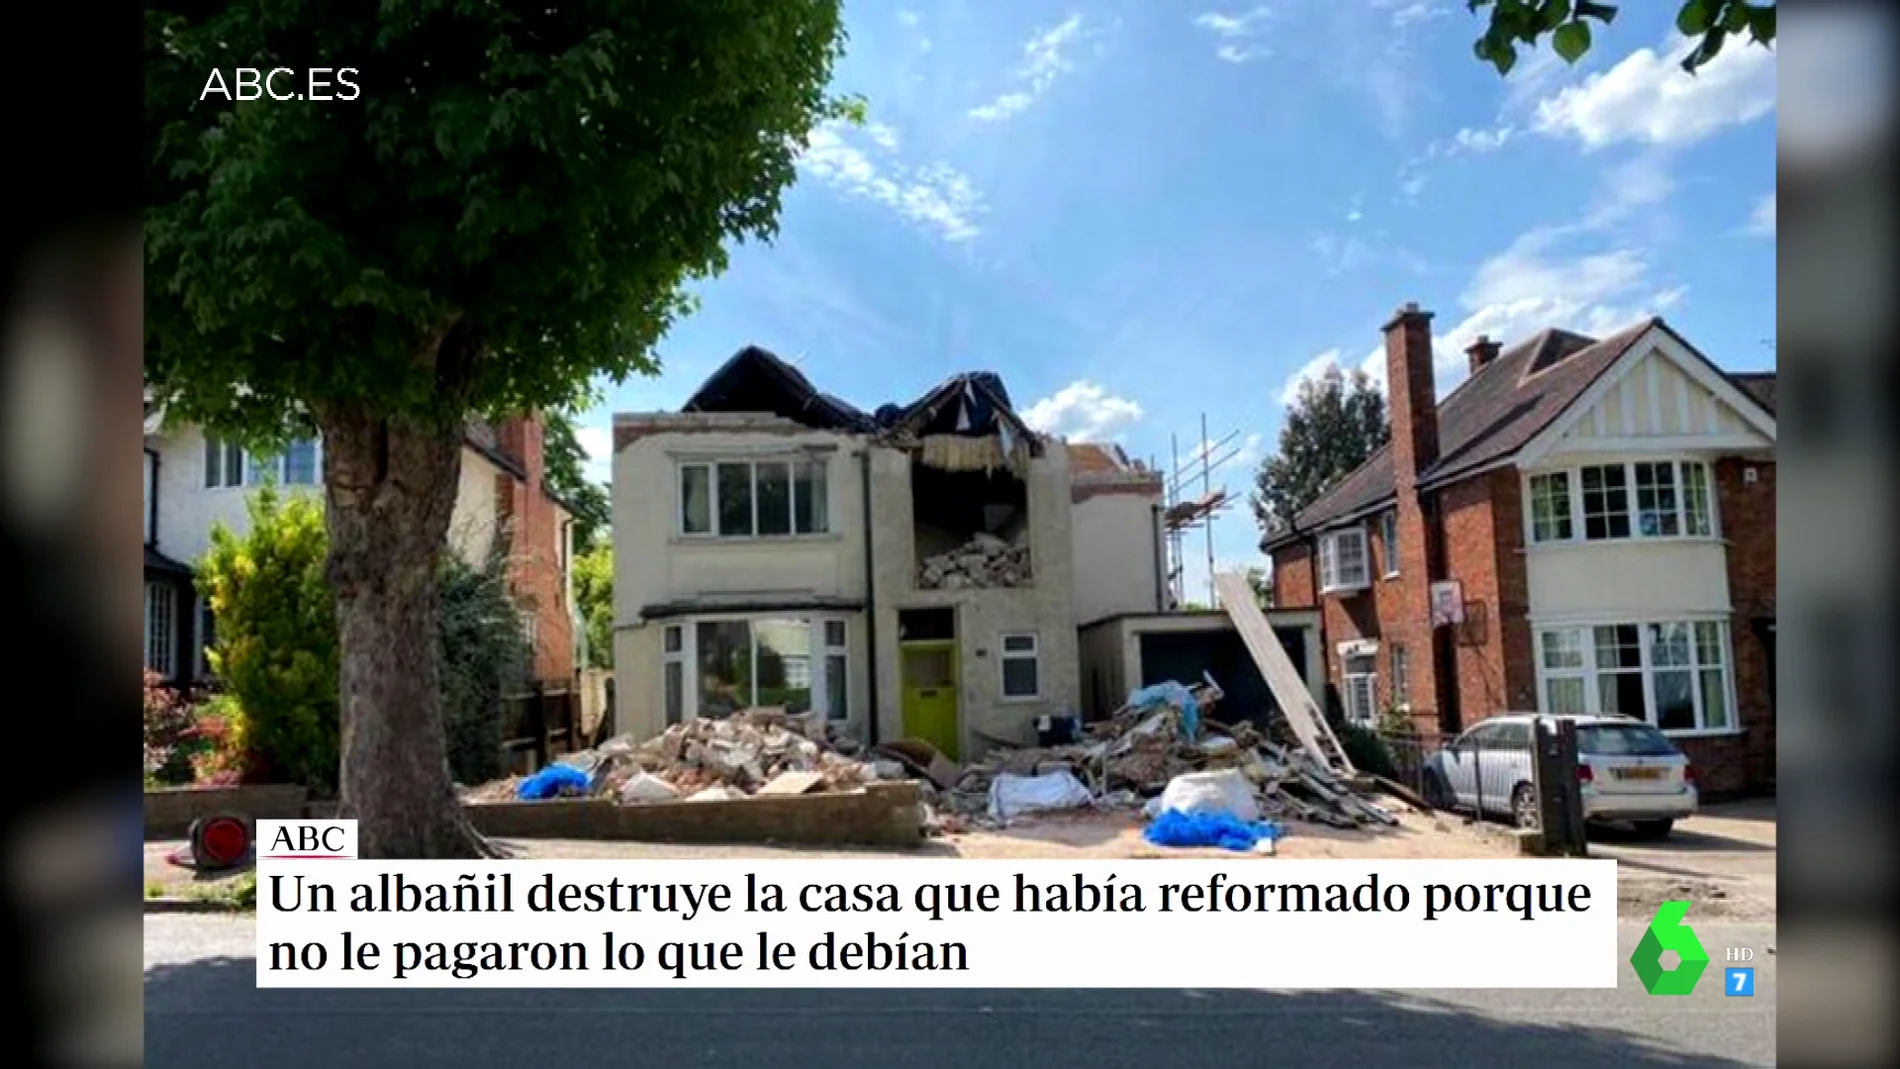 Un albañil destruye la casa que había reformado como venganza contra el dueño por no pagarle lo suficiente